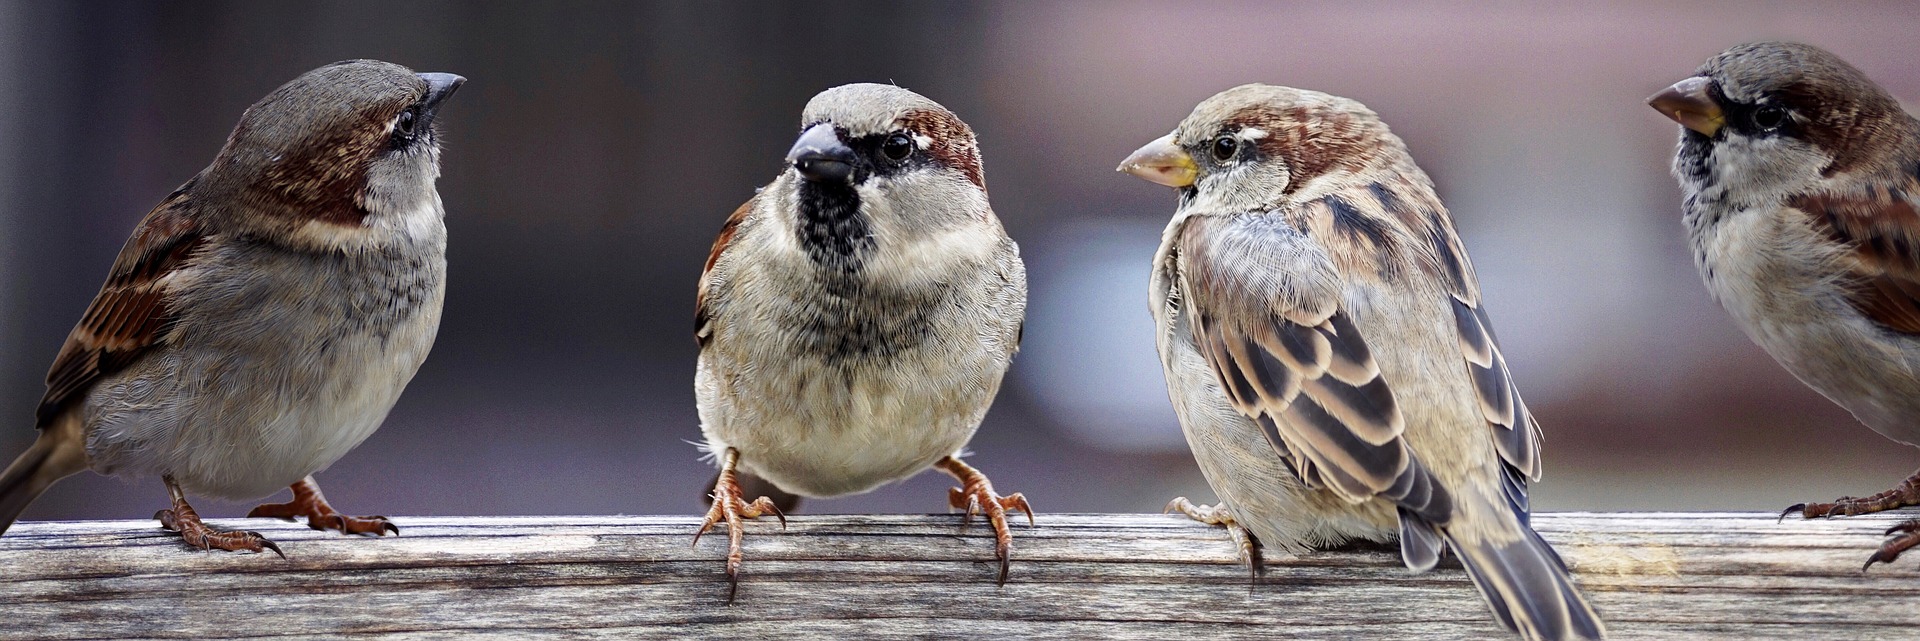 sparrows-2759978_1920